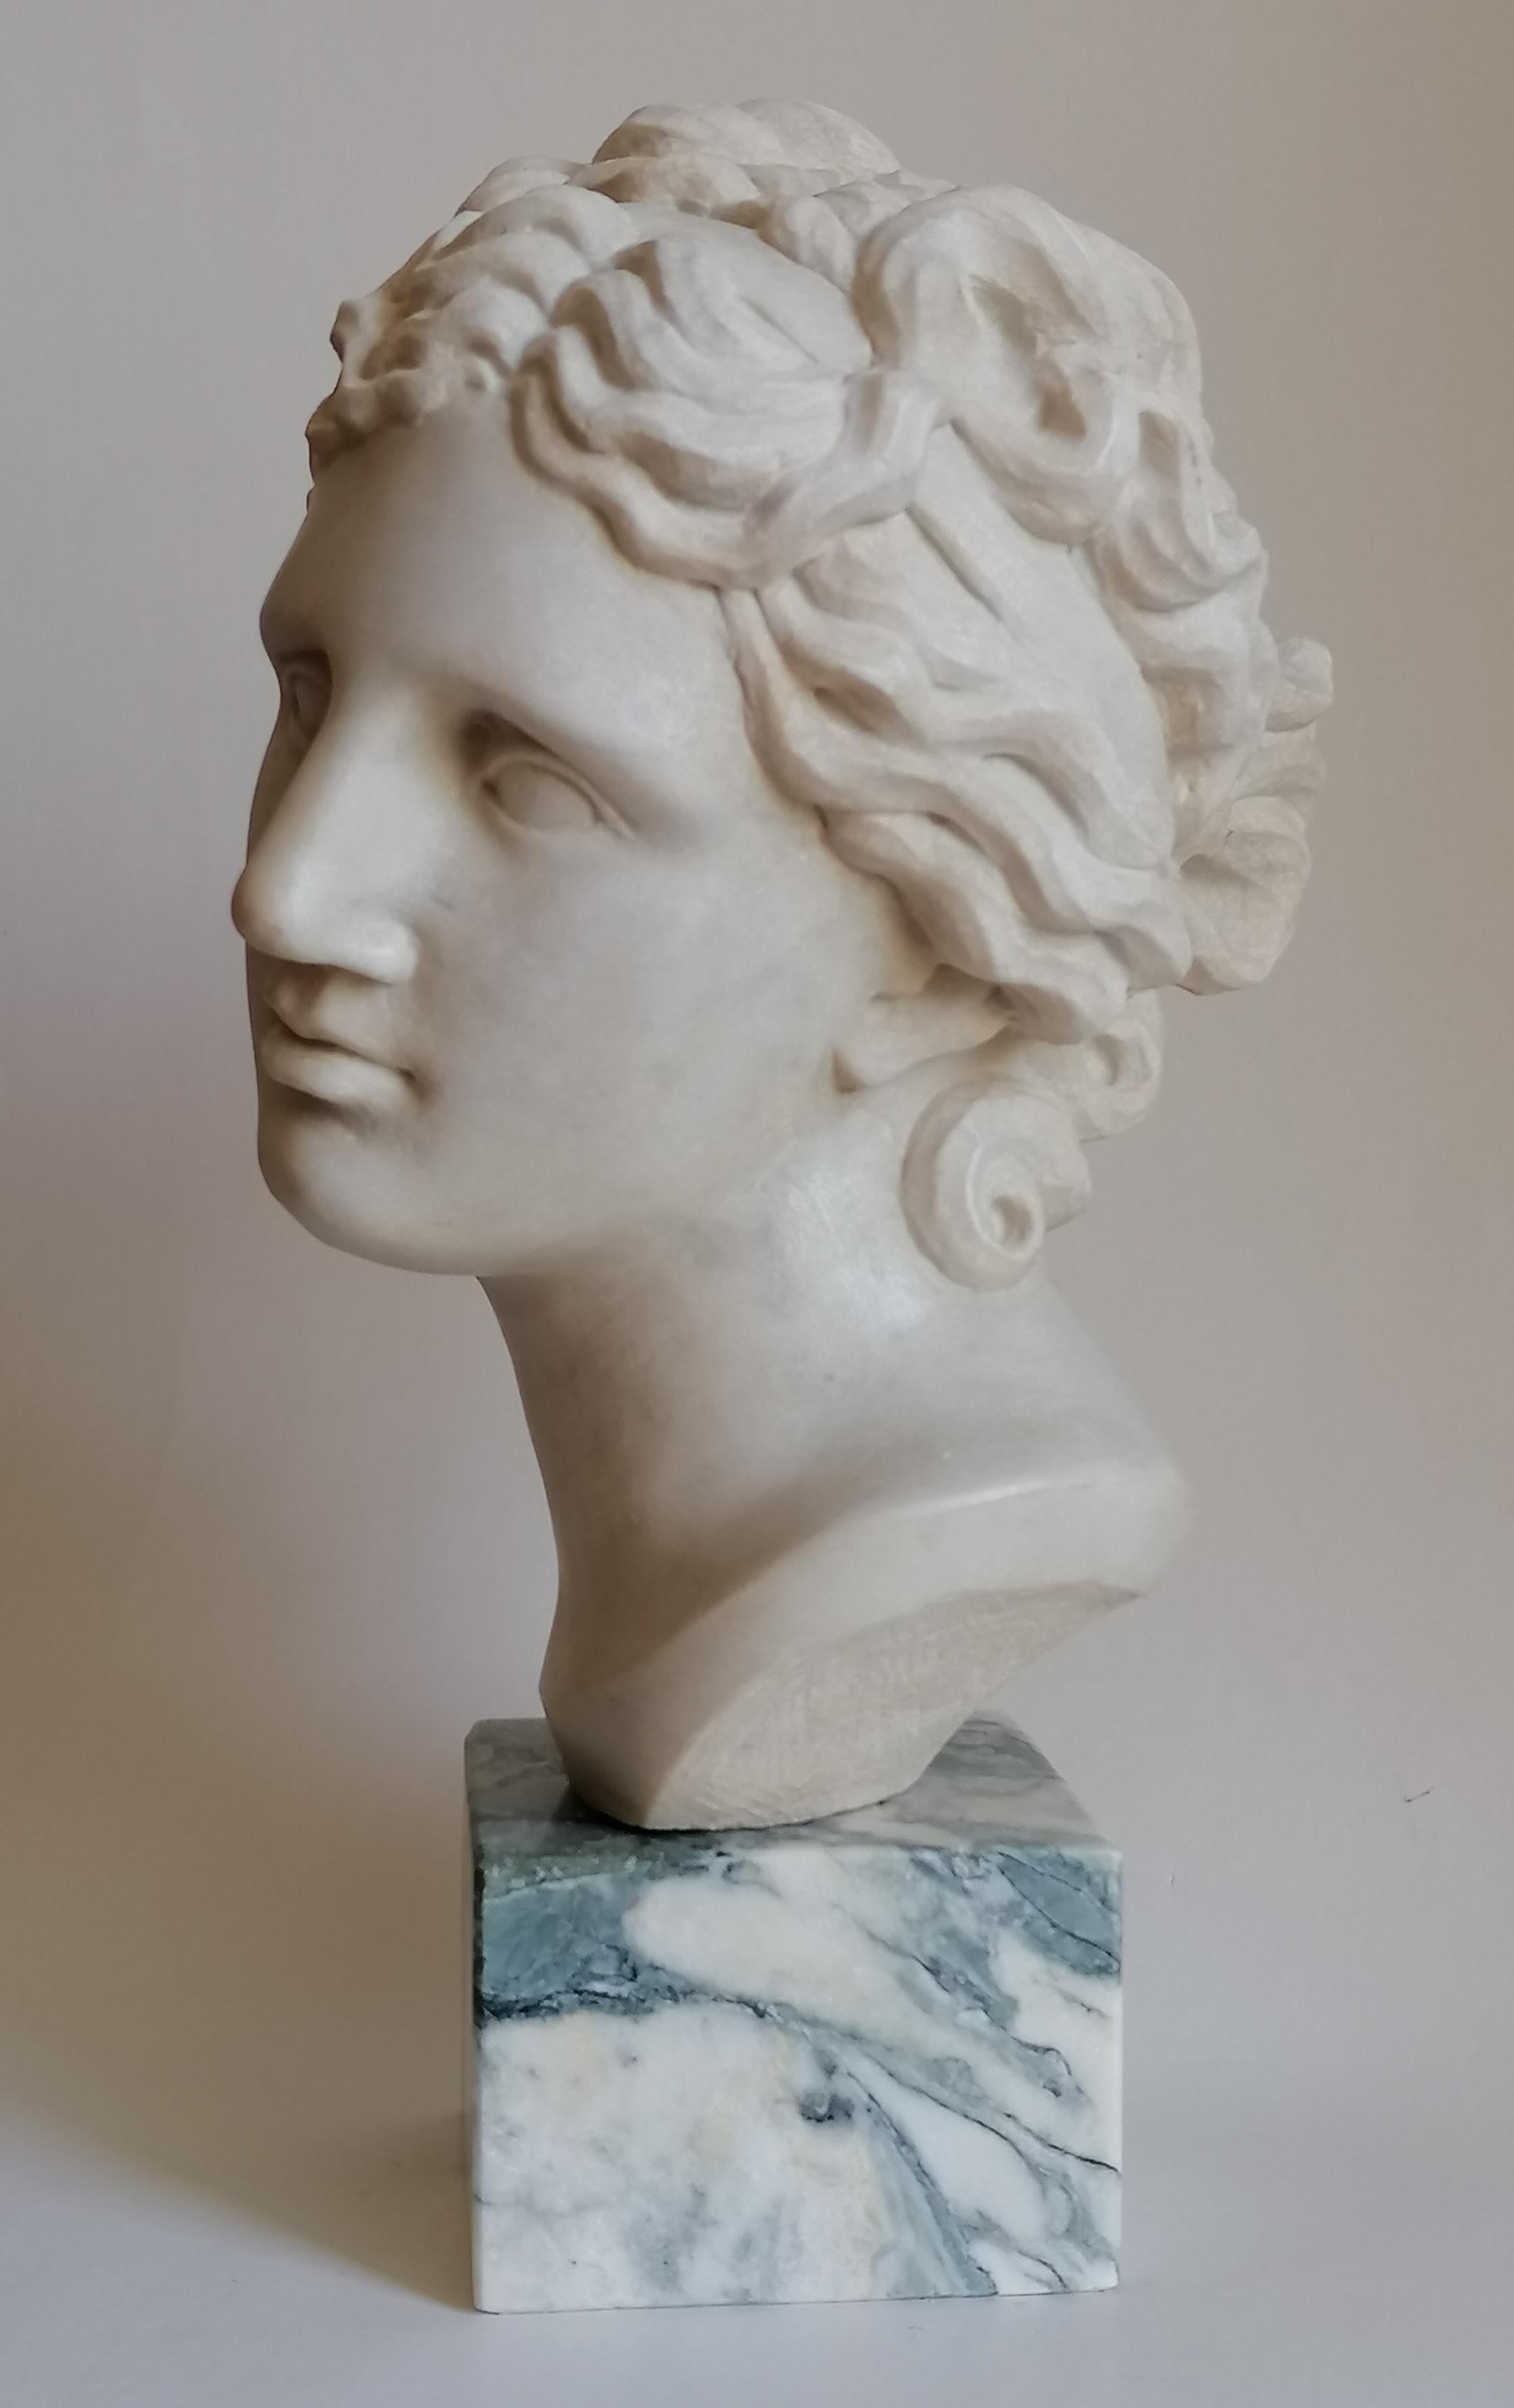 Italian Venere Medici -testa scolpita su marmo bianco di Carrara -made in Italy For Sale